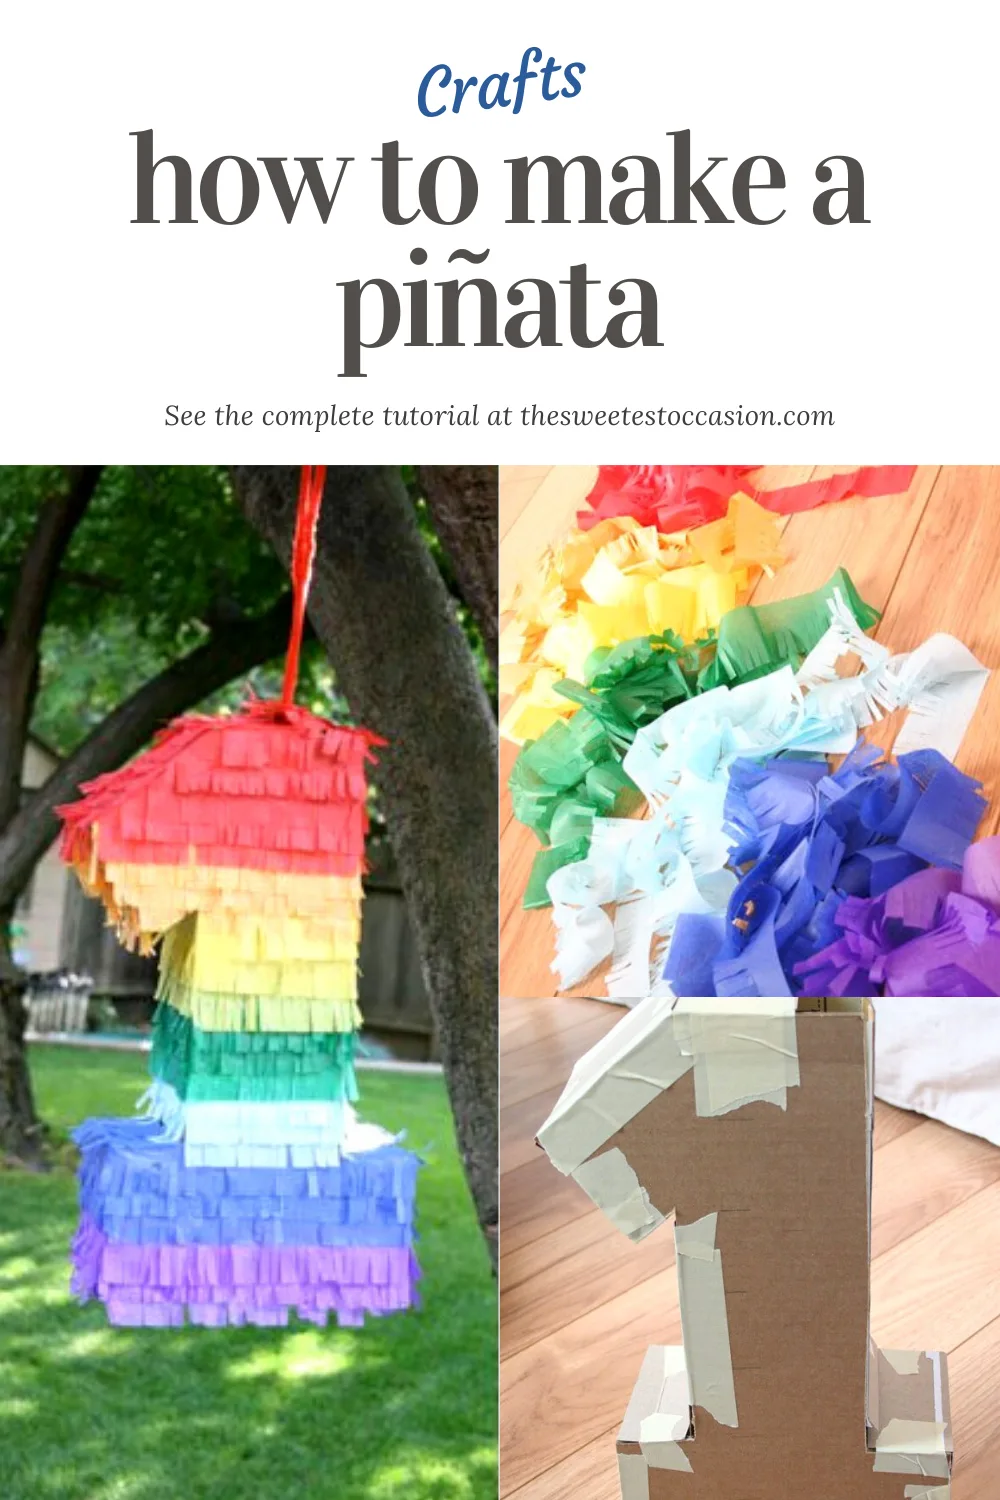 How to Make a Piñata